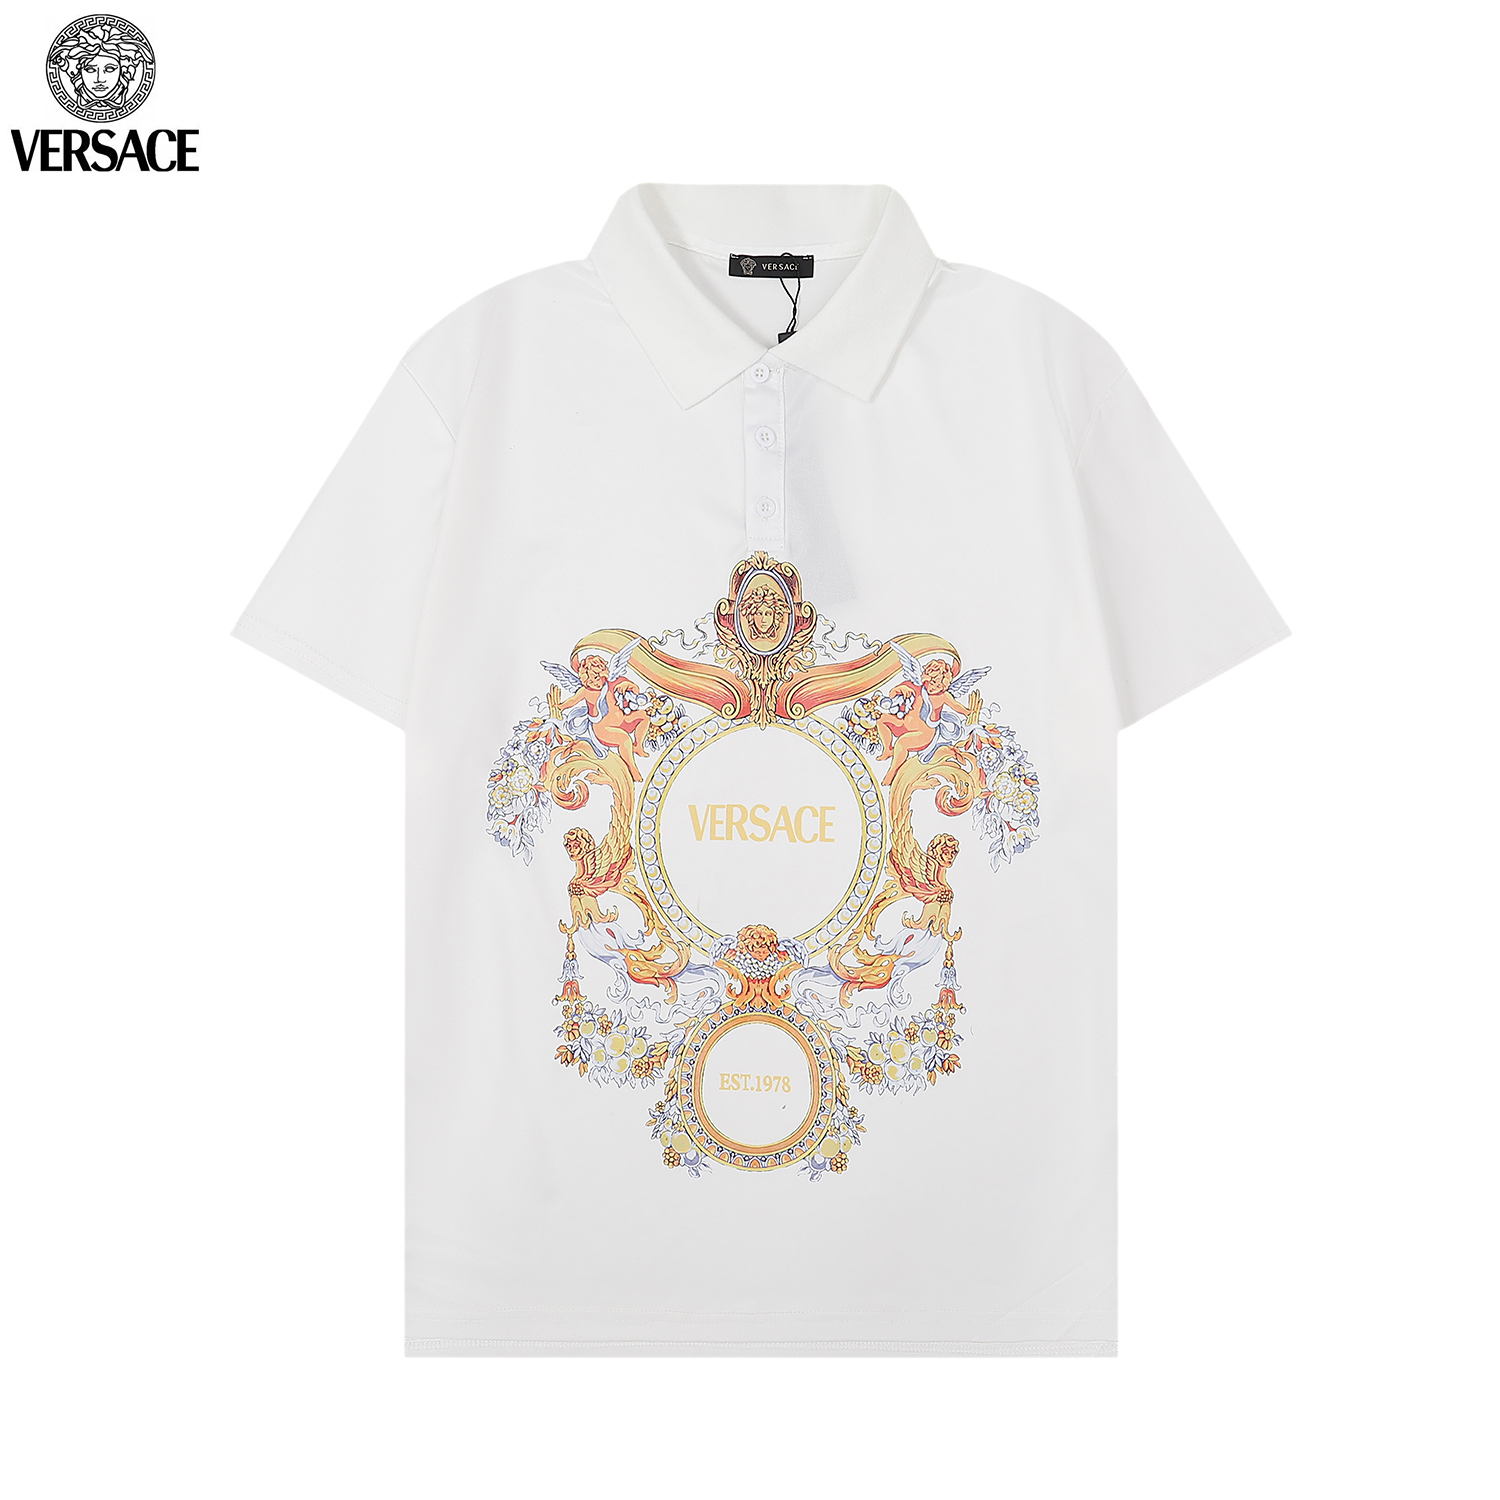 Versace Short Sleeve T Shirts Unisex # 265596, cheap Versace T Shirt Men's Versace, only $27!